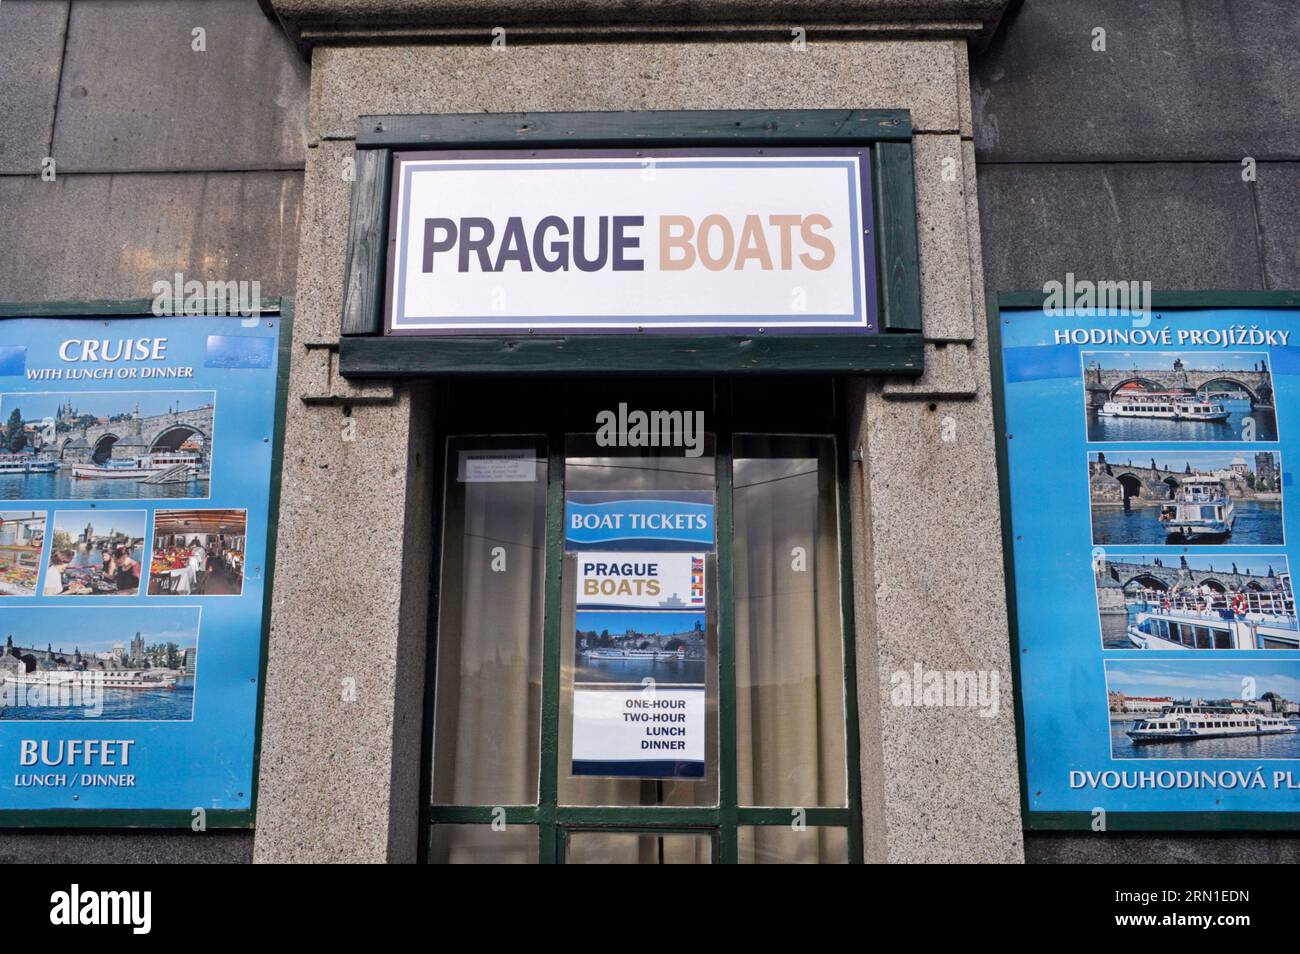 Edificio de venta de billetes para excursiones en barco, Praga, República Checa Foto de stock